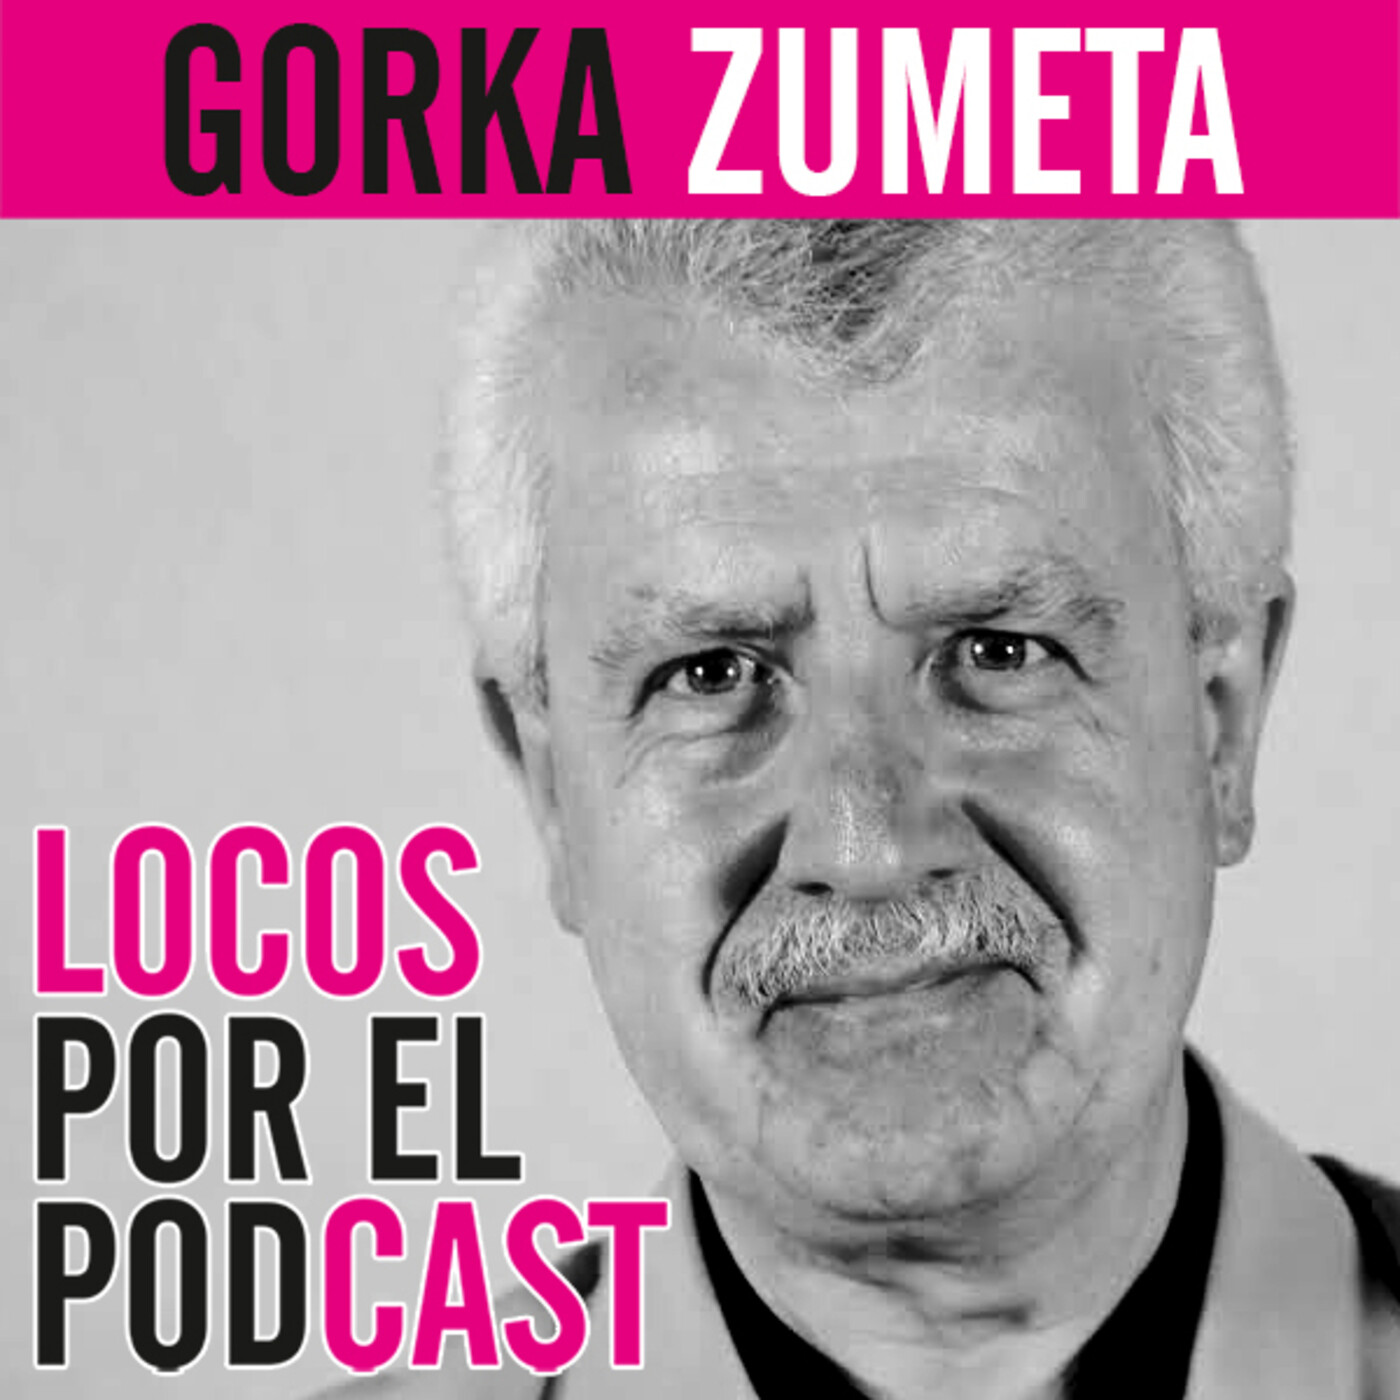 Gorka Zumeta: Radio, podcast, audio… una imagen nunca valdrá más que mil palabras